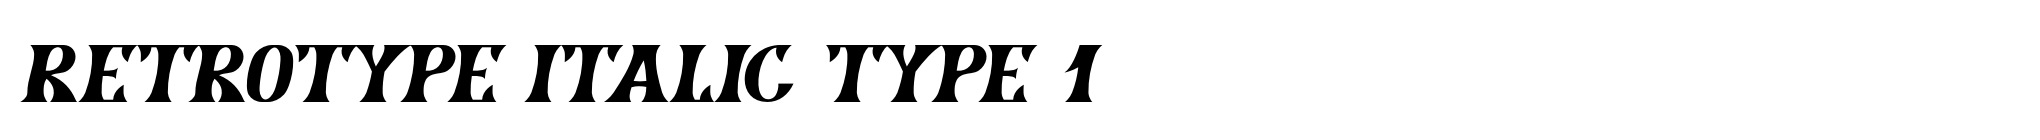 Retrotype Italic Type 1 image